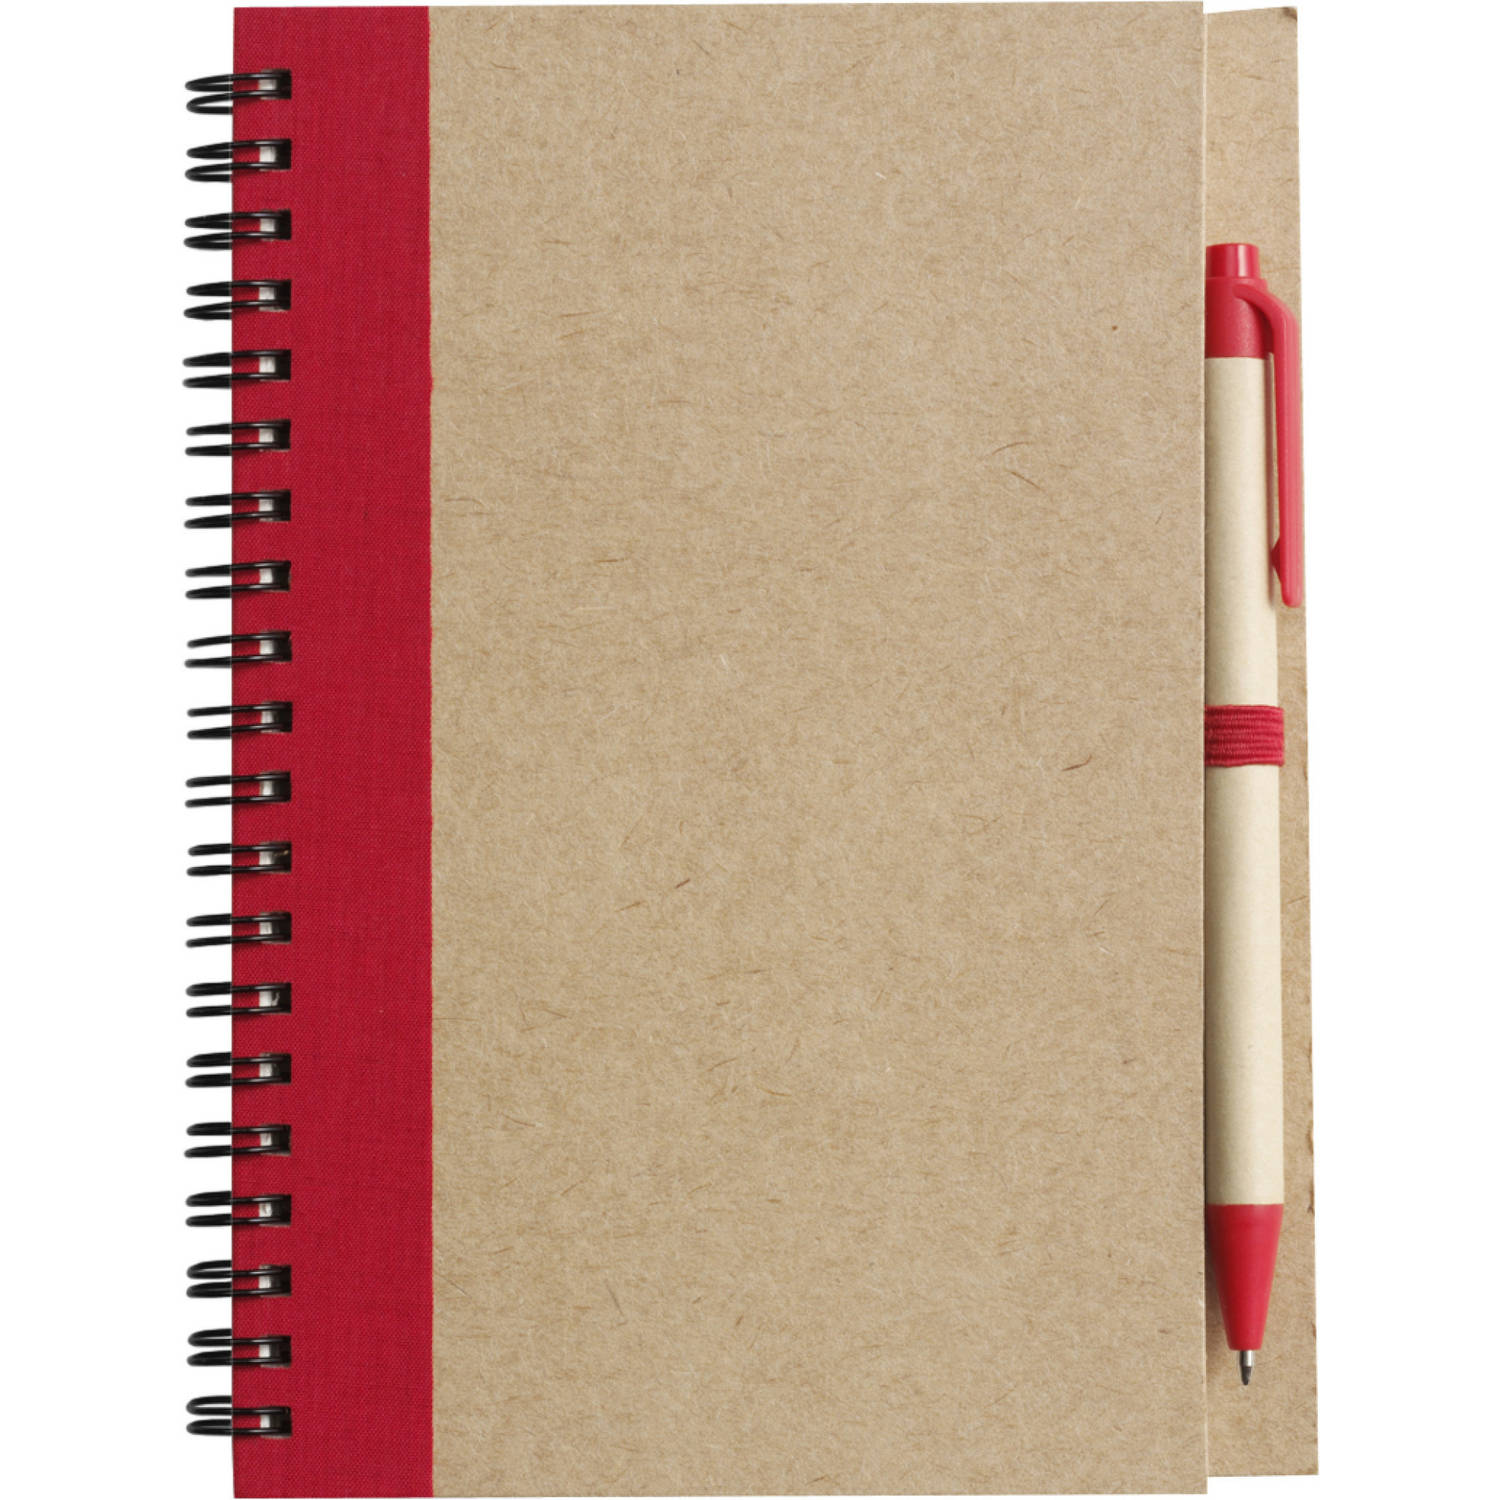 Notitie-opschrijf boekje met balpen harde kaft beige-rood 18x13cm 60blz gelinieerd Notitieboek